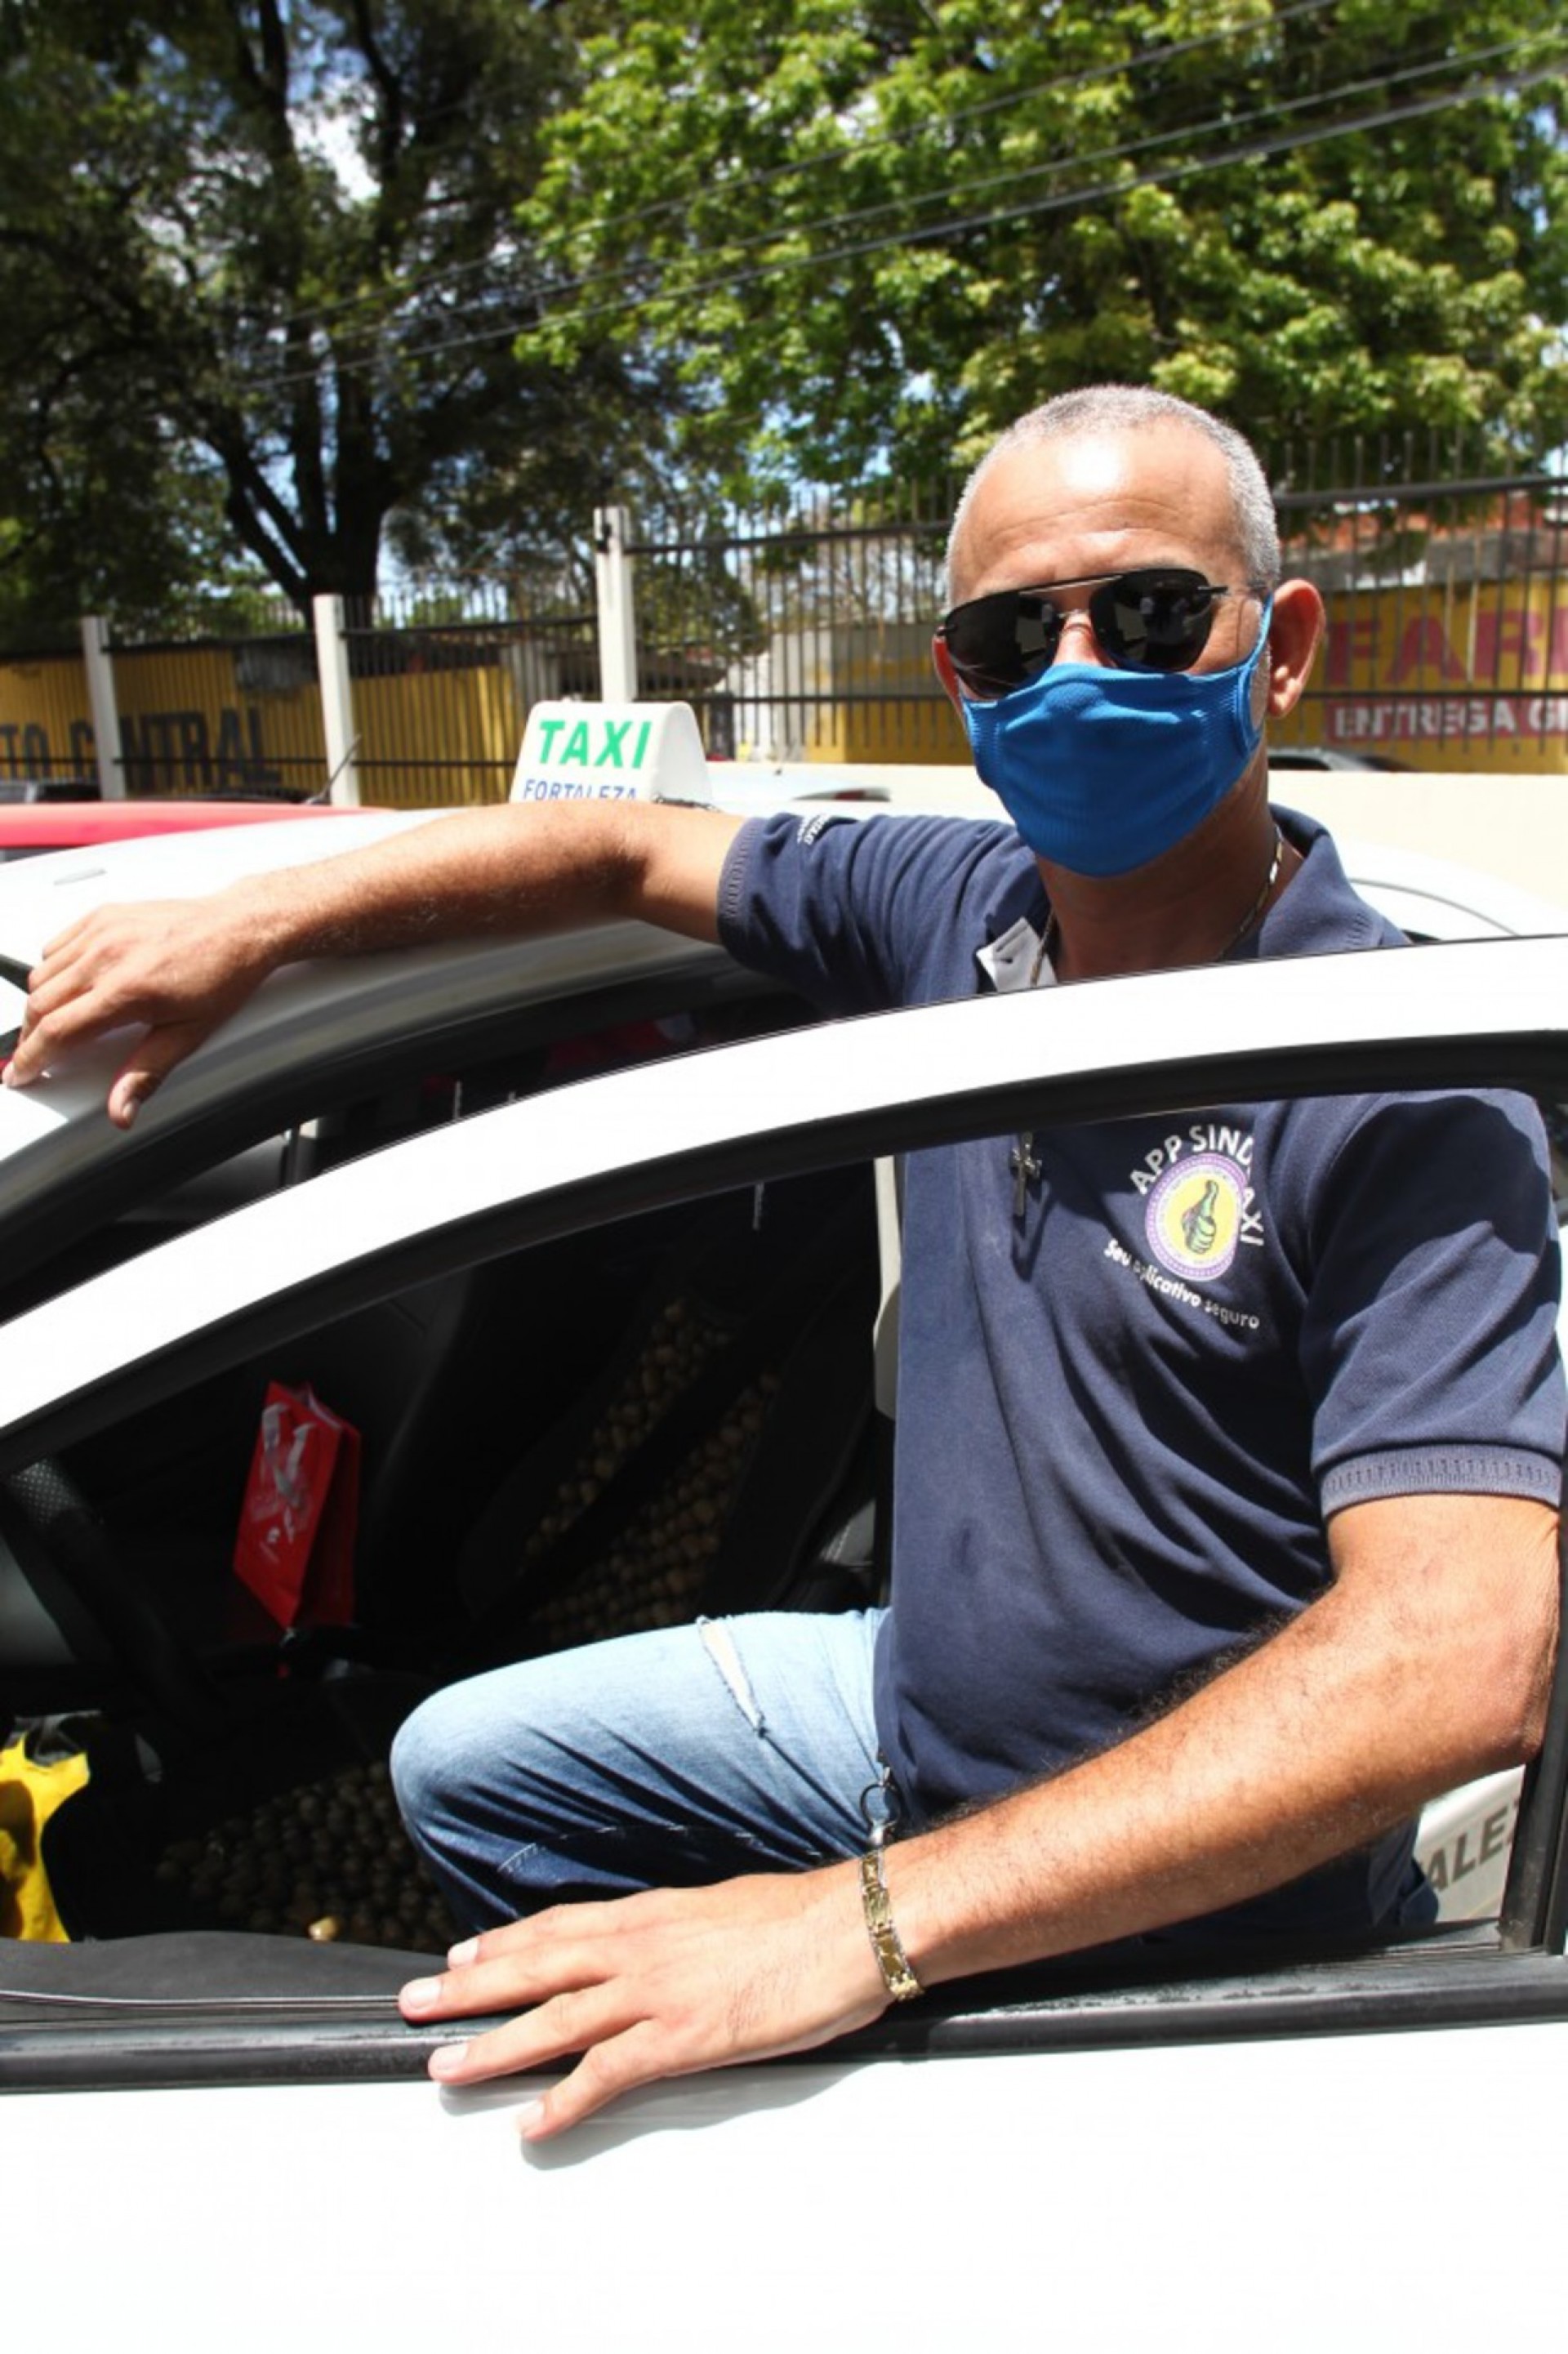 ￼José Valdemir, 49, devolveu uma quantia de R$ 4 mil recebida devido a um engano (Foto: FABIO LIMA)